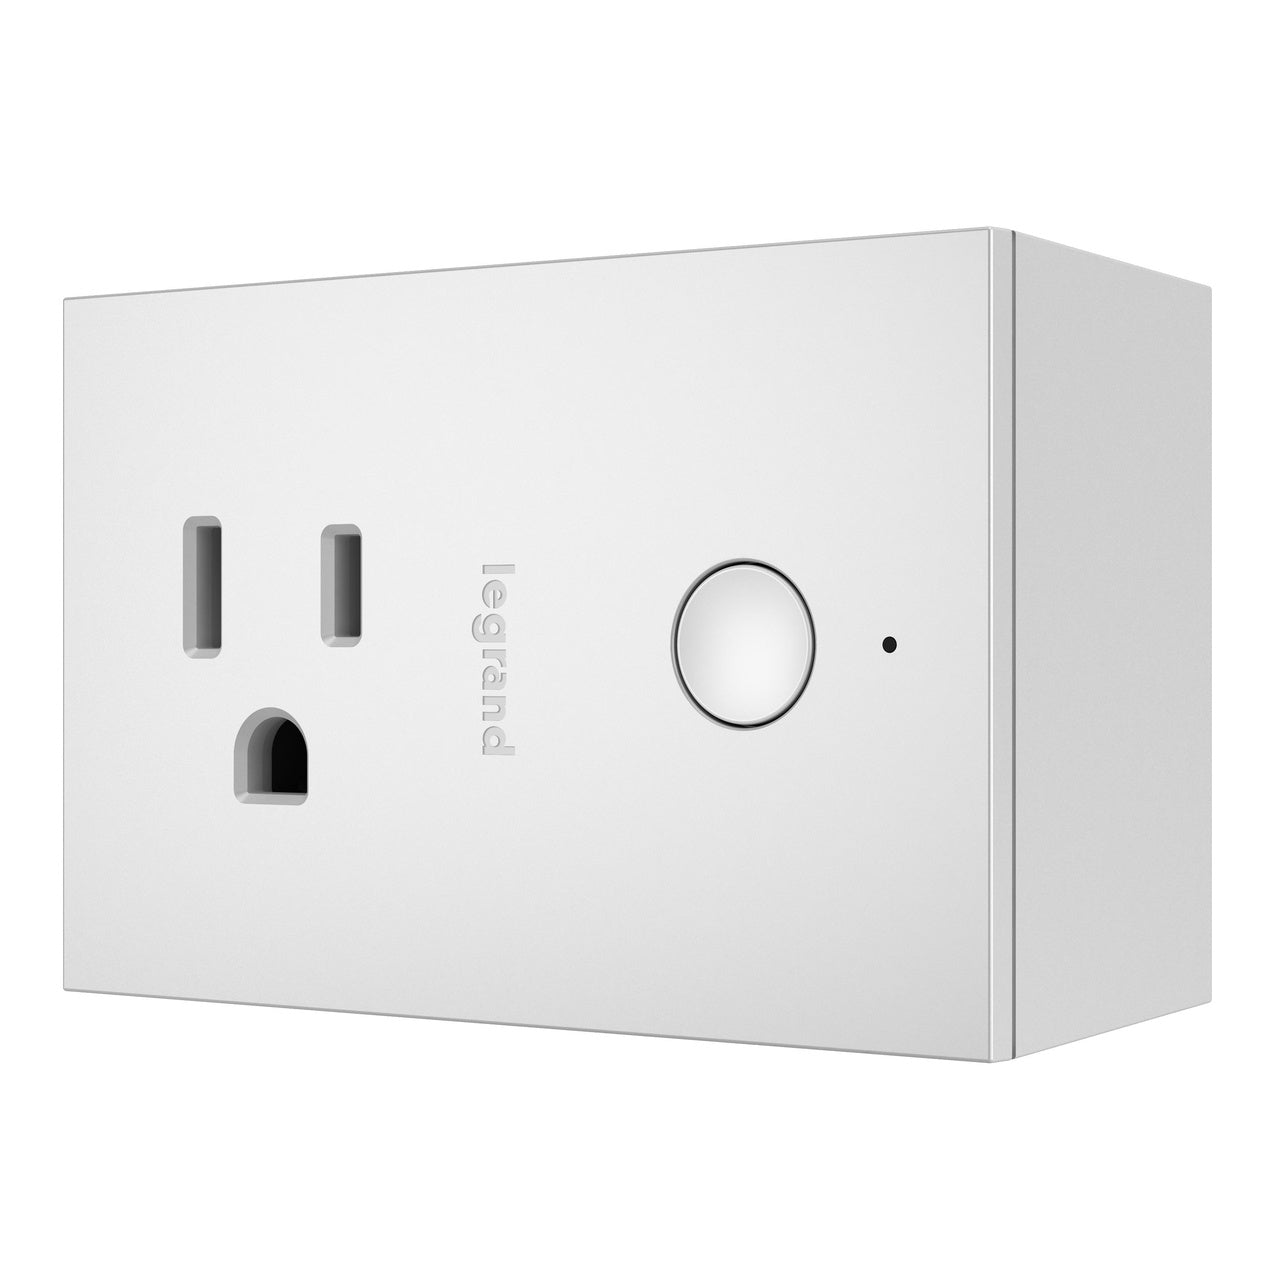 Smart Plug-In Switch with Netatmo